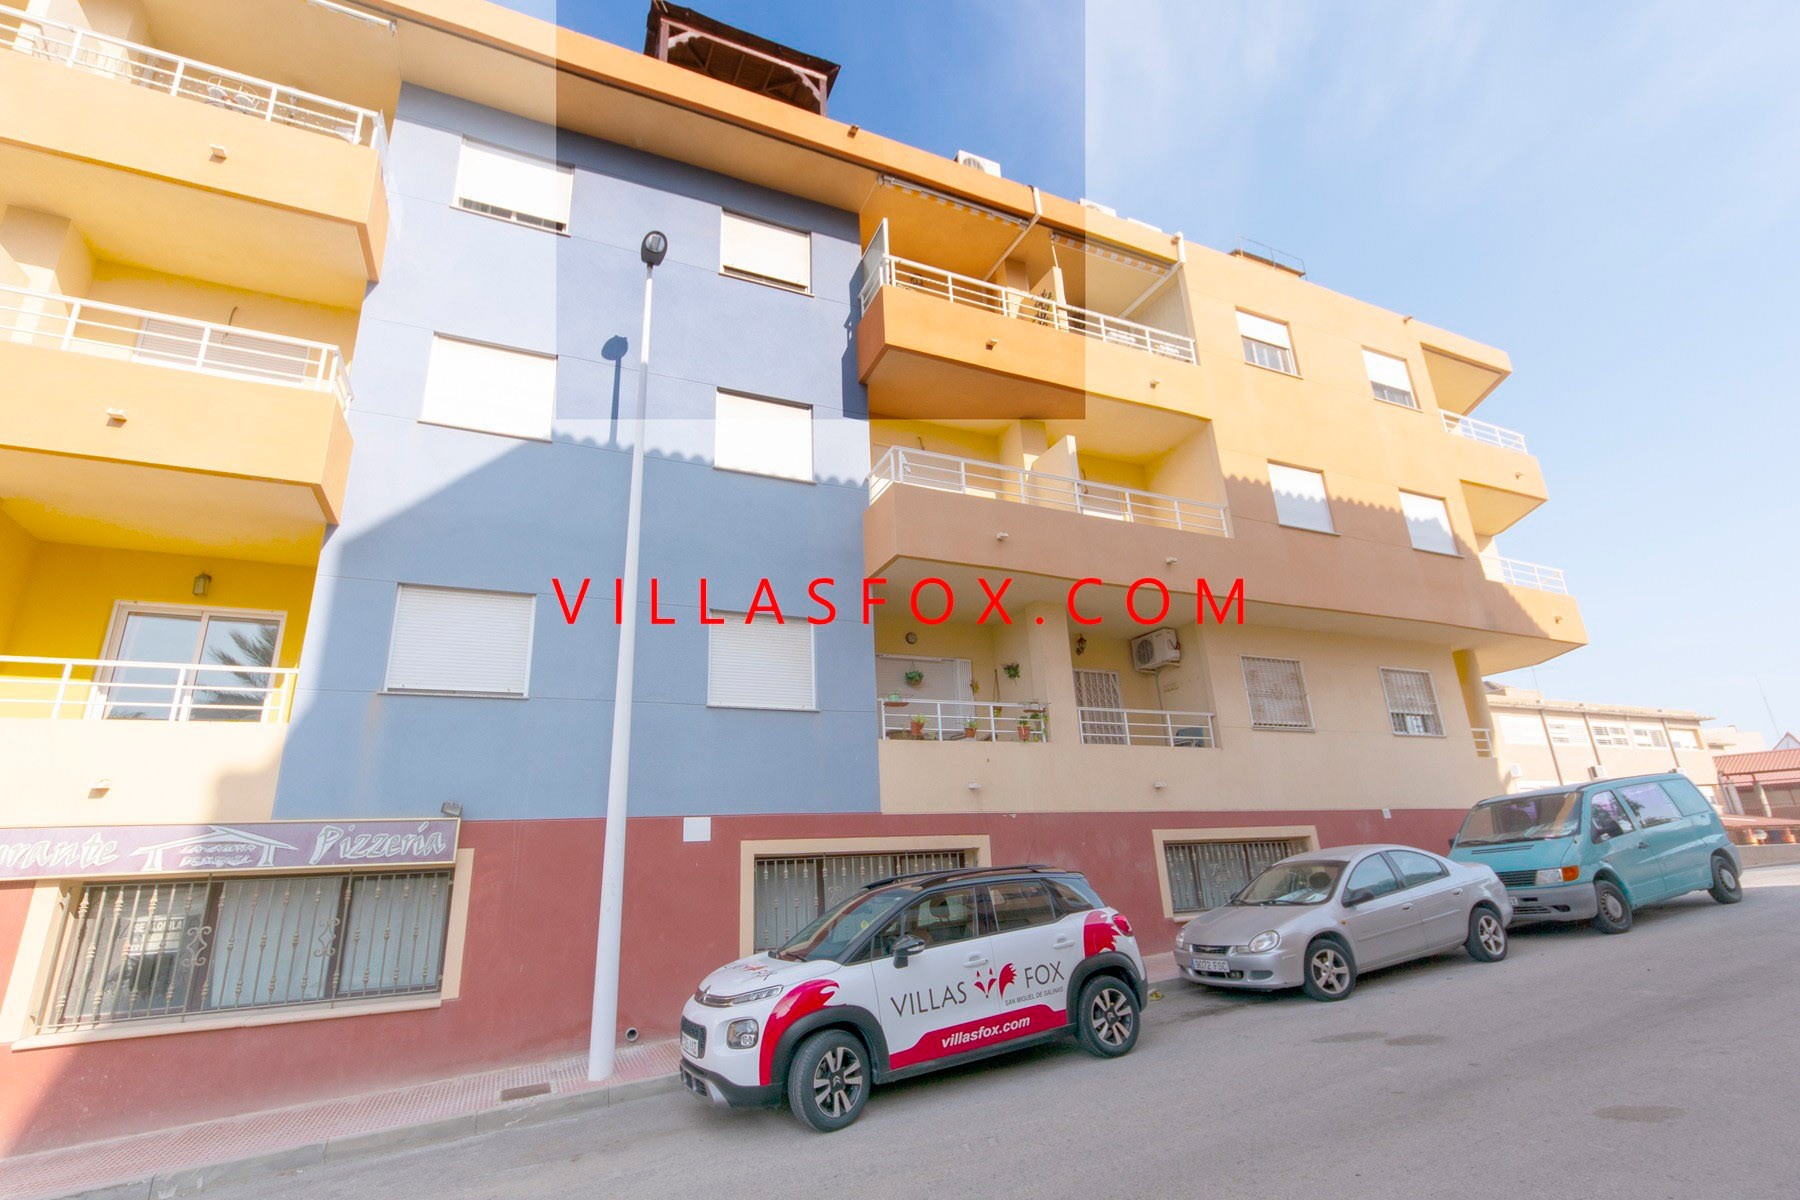 1 San Miguel de Salinas Lejlighed i centrum af Villas Fox bedste ejendomsmæglere 611039449965e